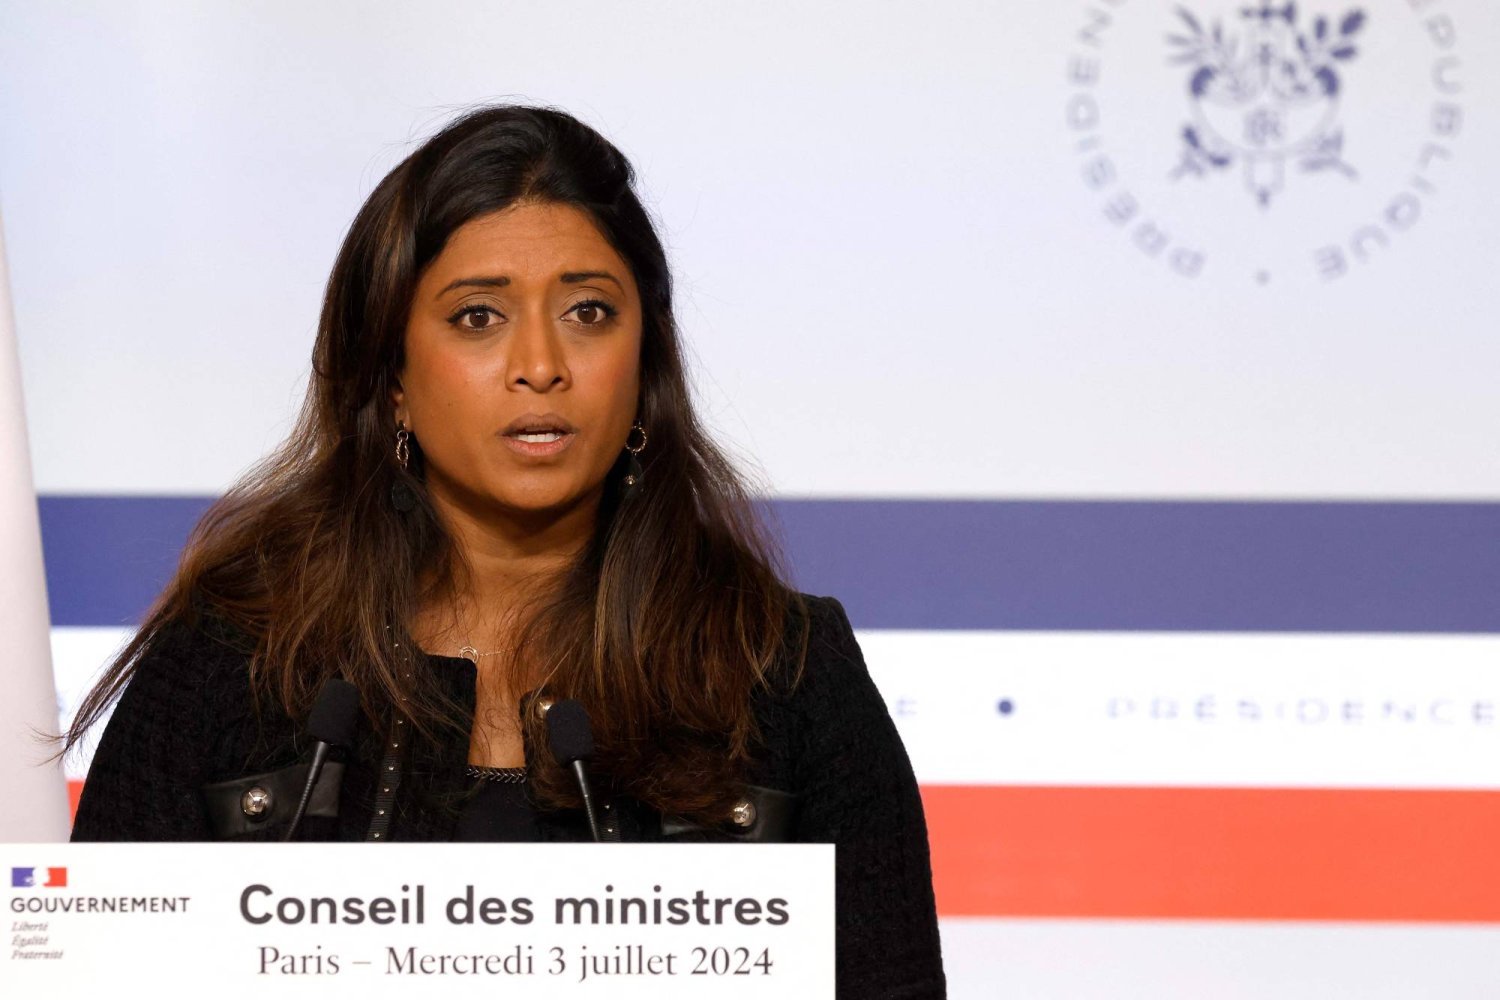 المتحدثة باسم الحكومة الفرنسية تتعرّض لهجوم خلال حملتها الانتخابية